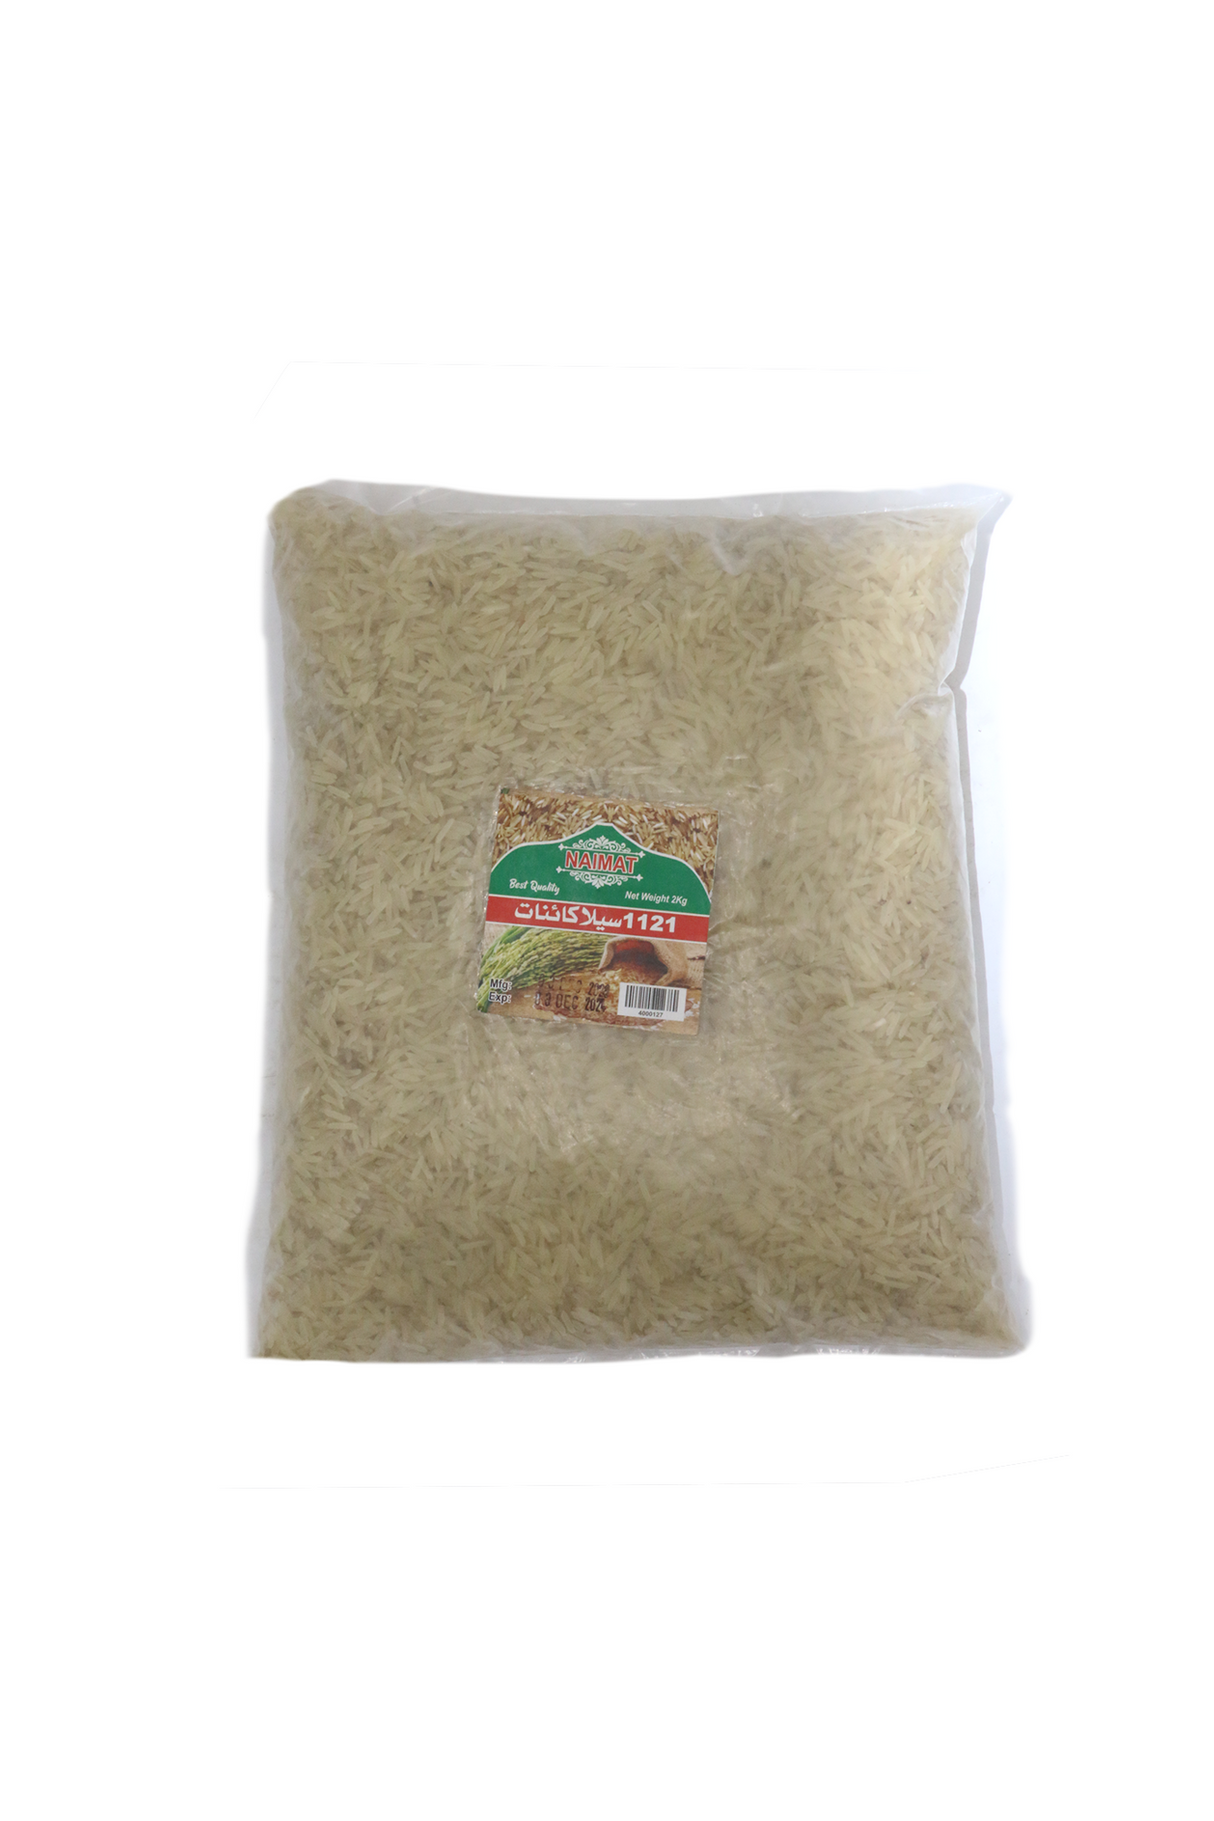 naimat rice pakki kainat 2kg